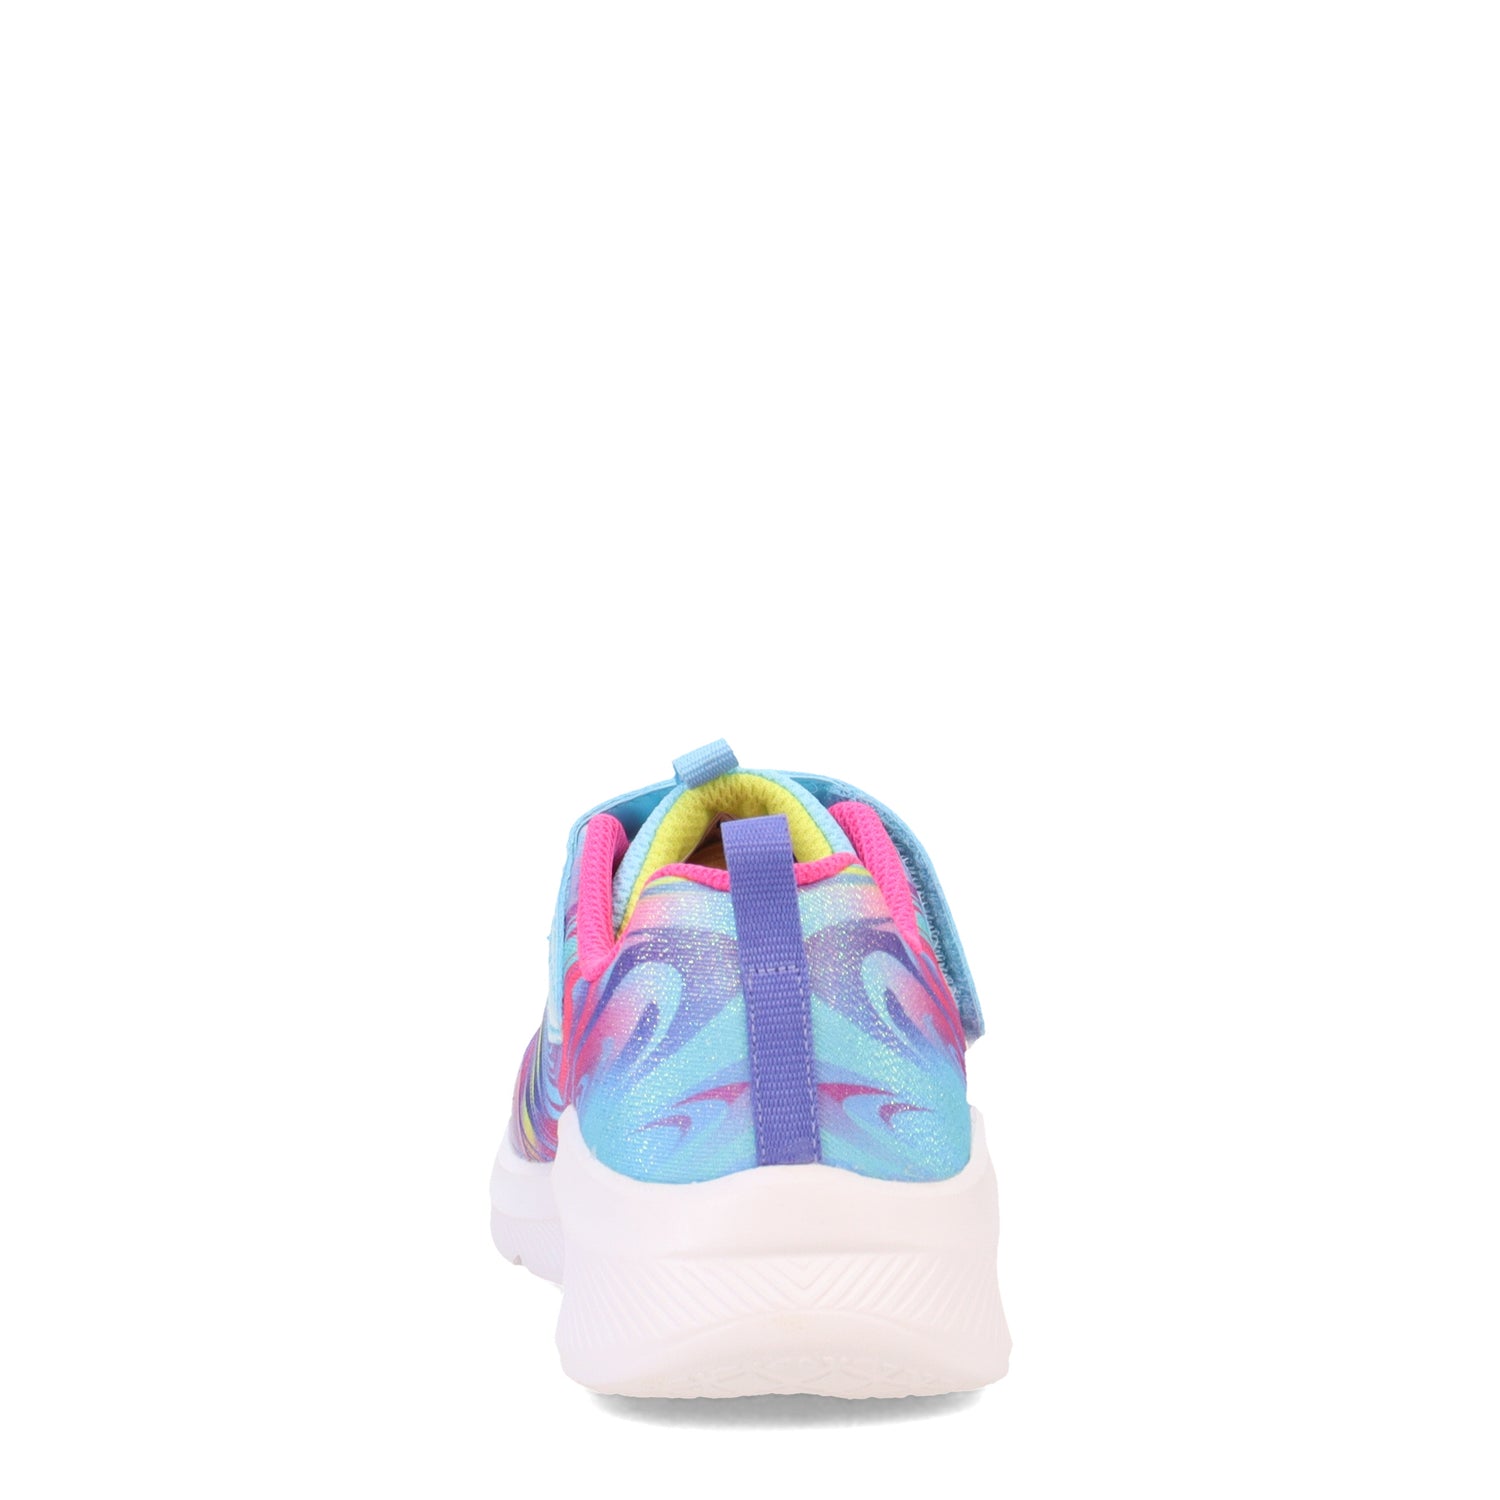 Peltz Shoes  Girl's Skechers Dreamy Lites - Swirly Sweets Sneaker - Little Kid BLUE 303512L-BLMT